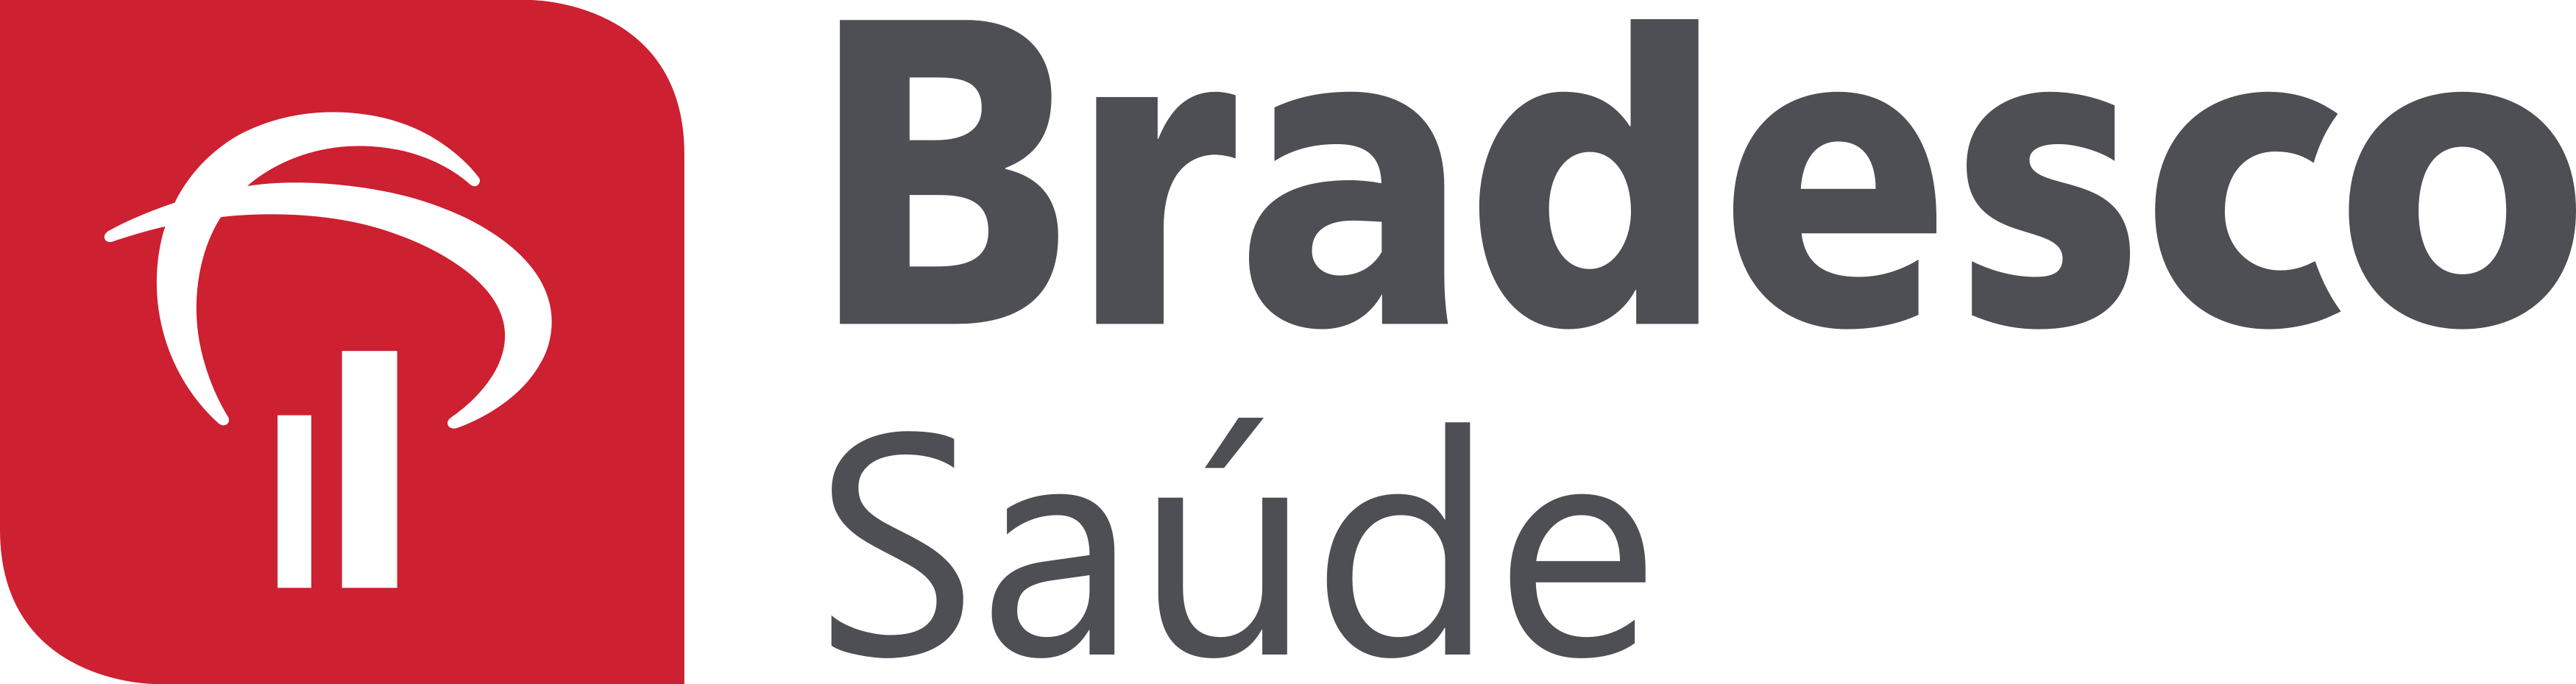 bradesco-saude-logo.png